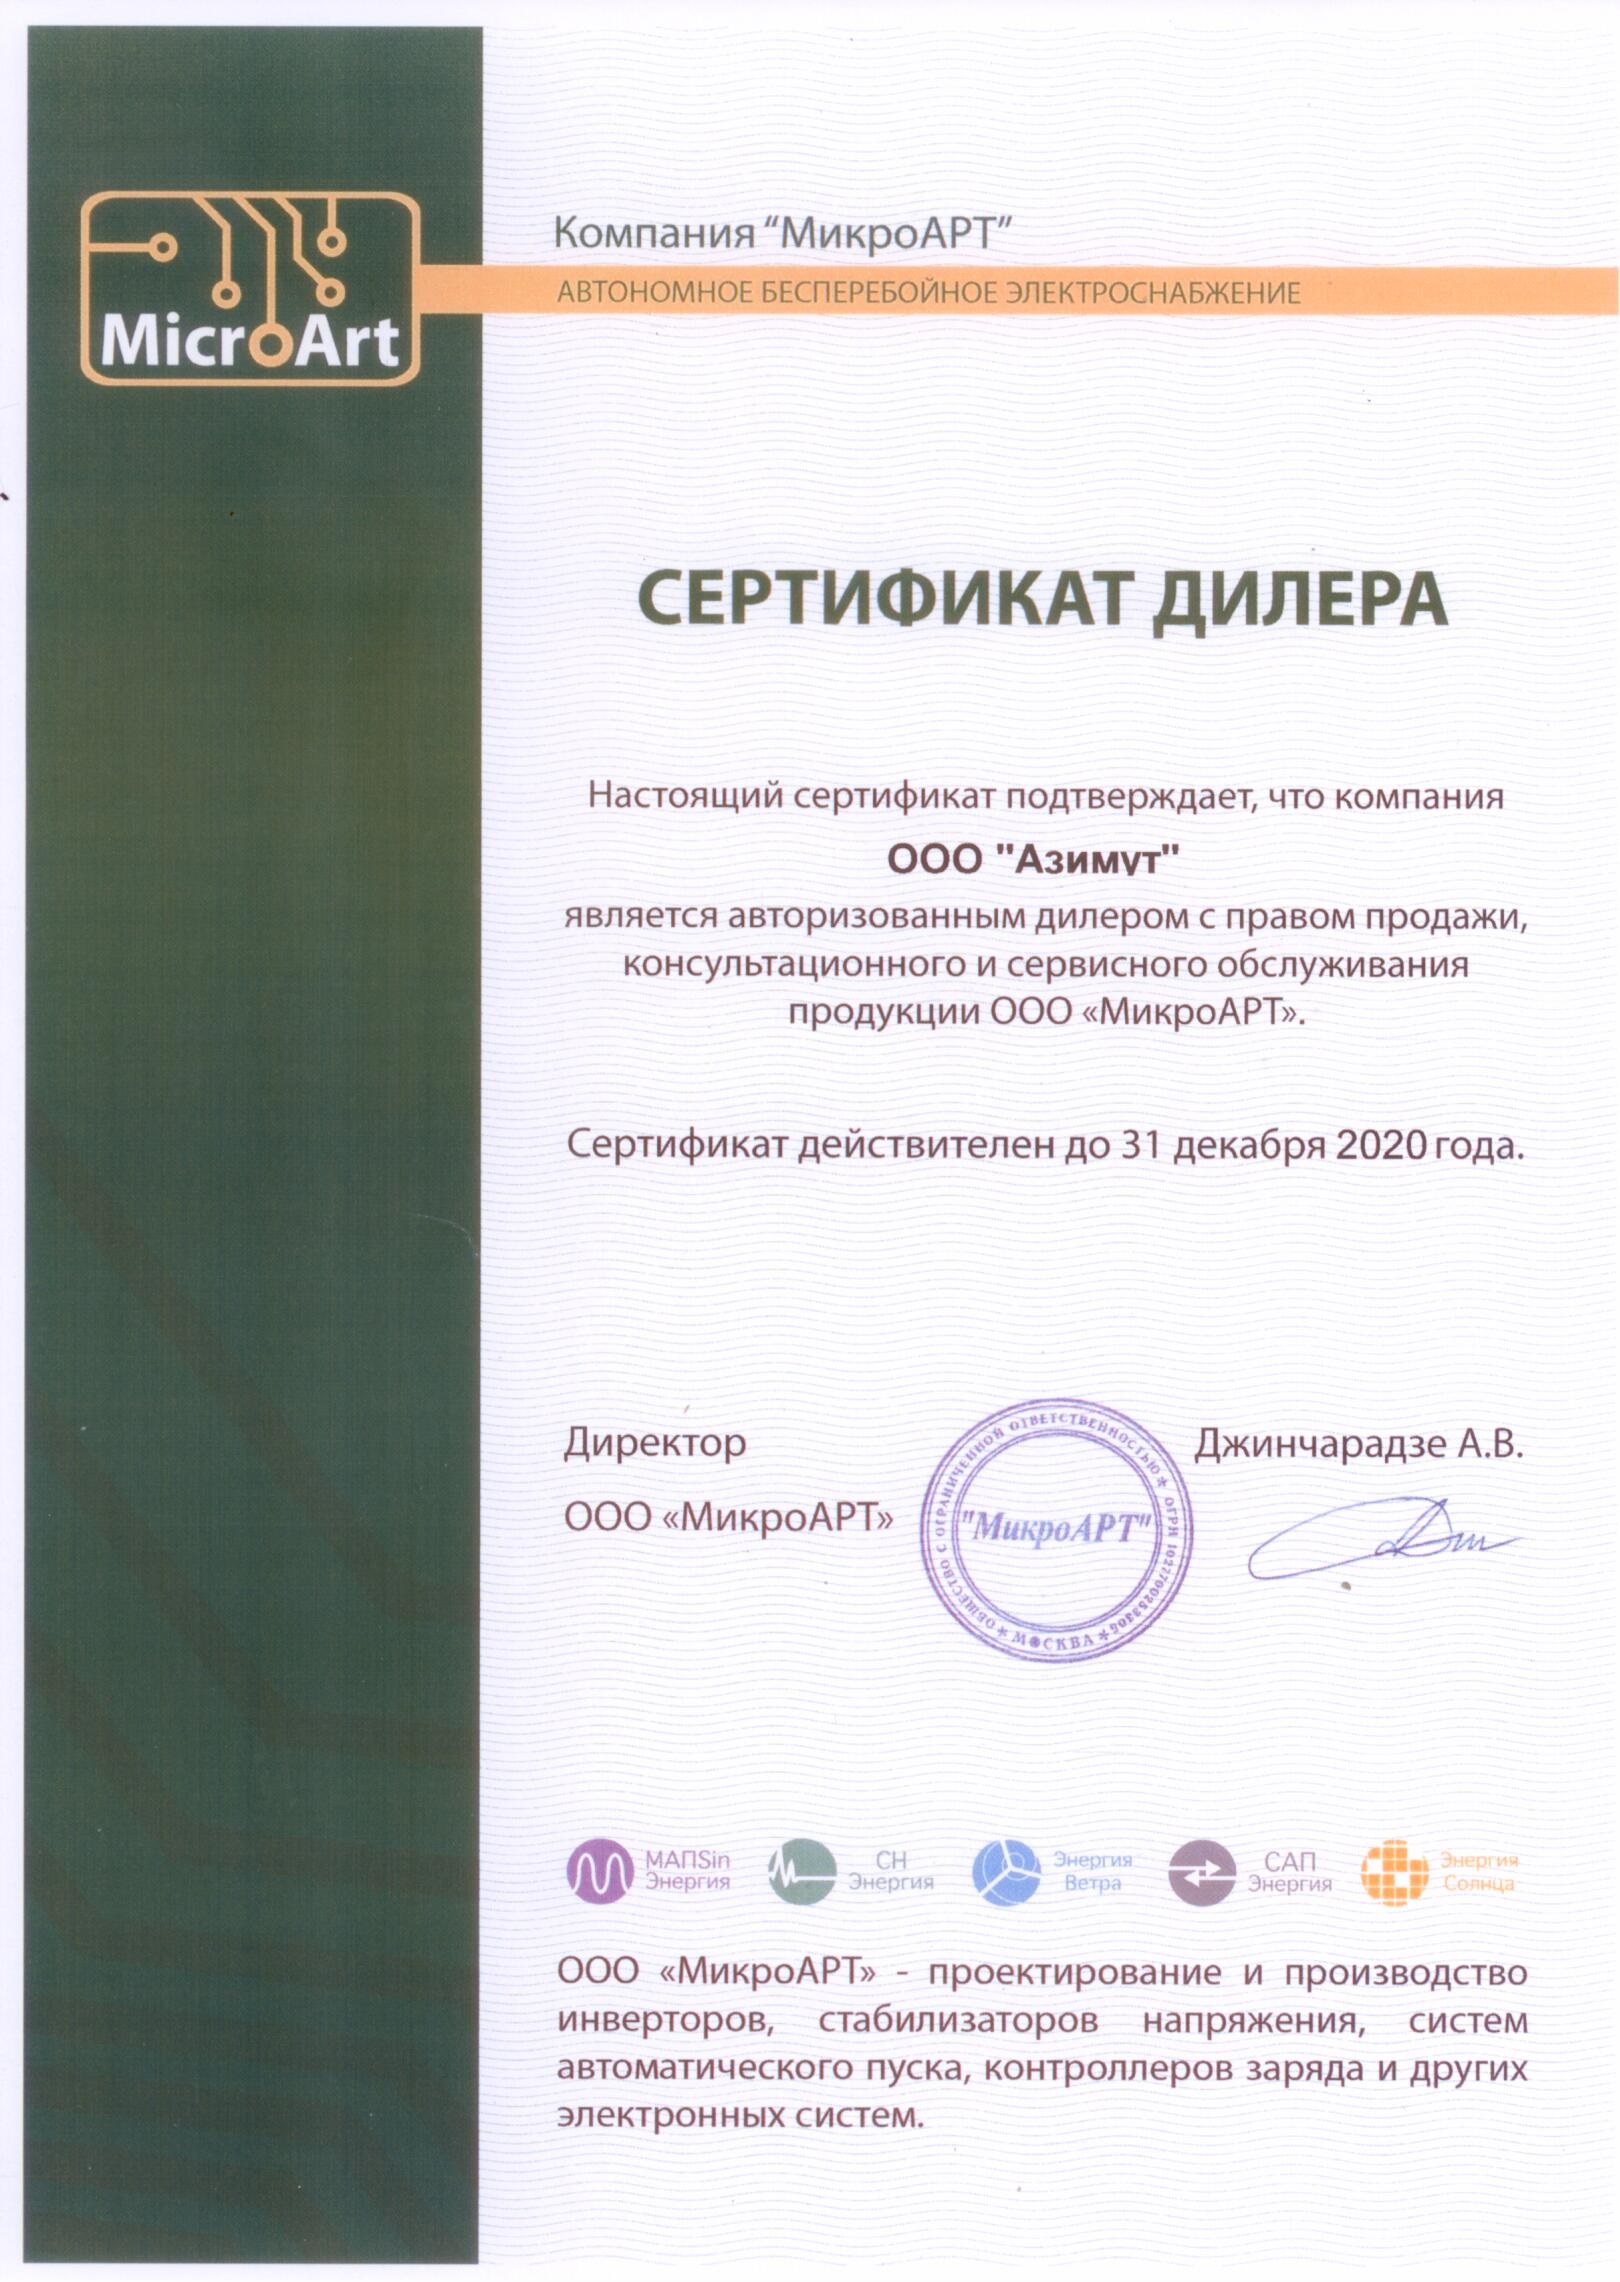 Сертификат дилера МикроАРТ